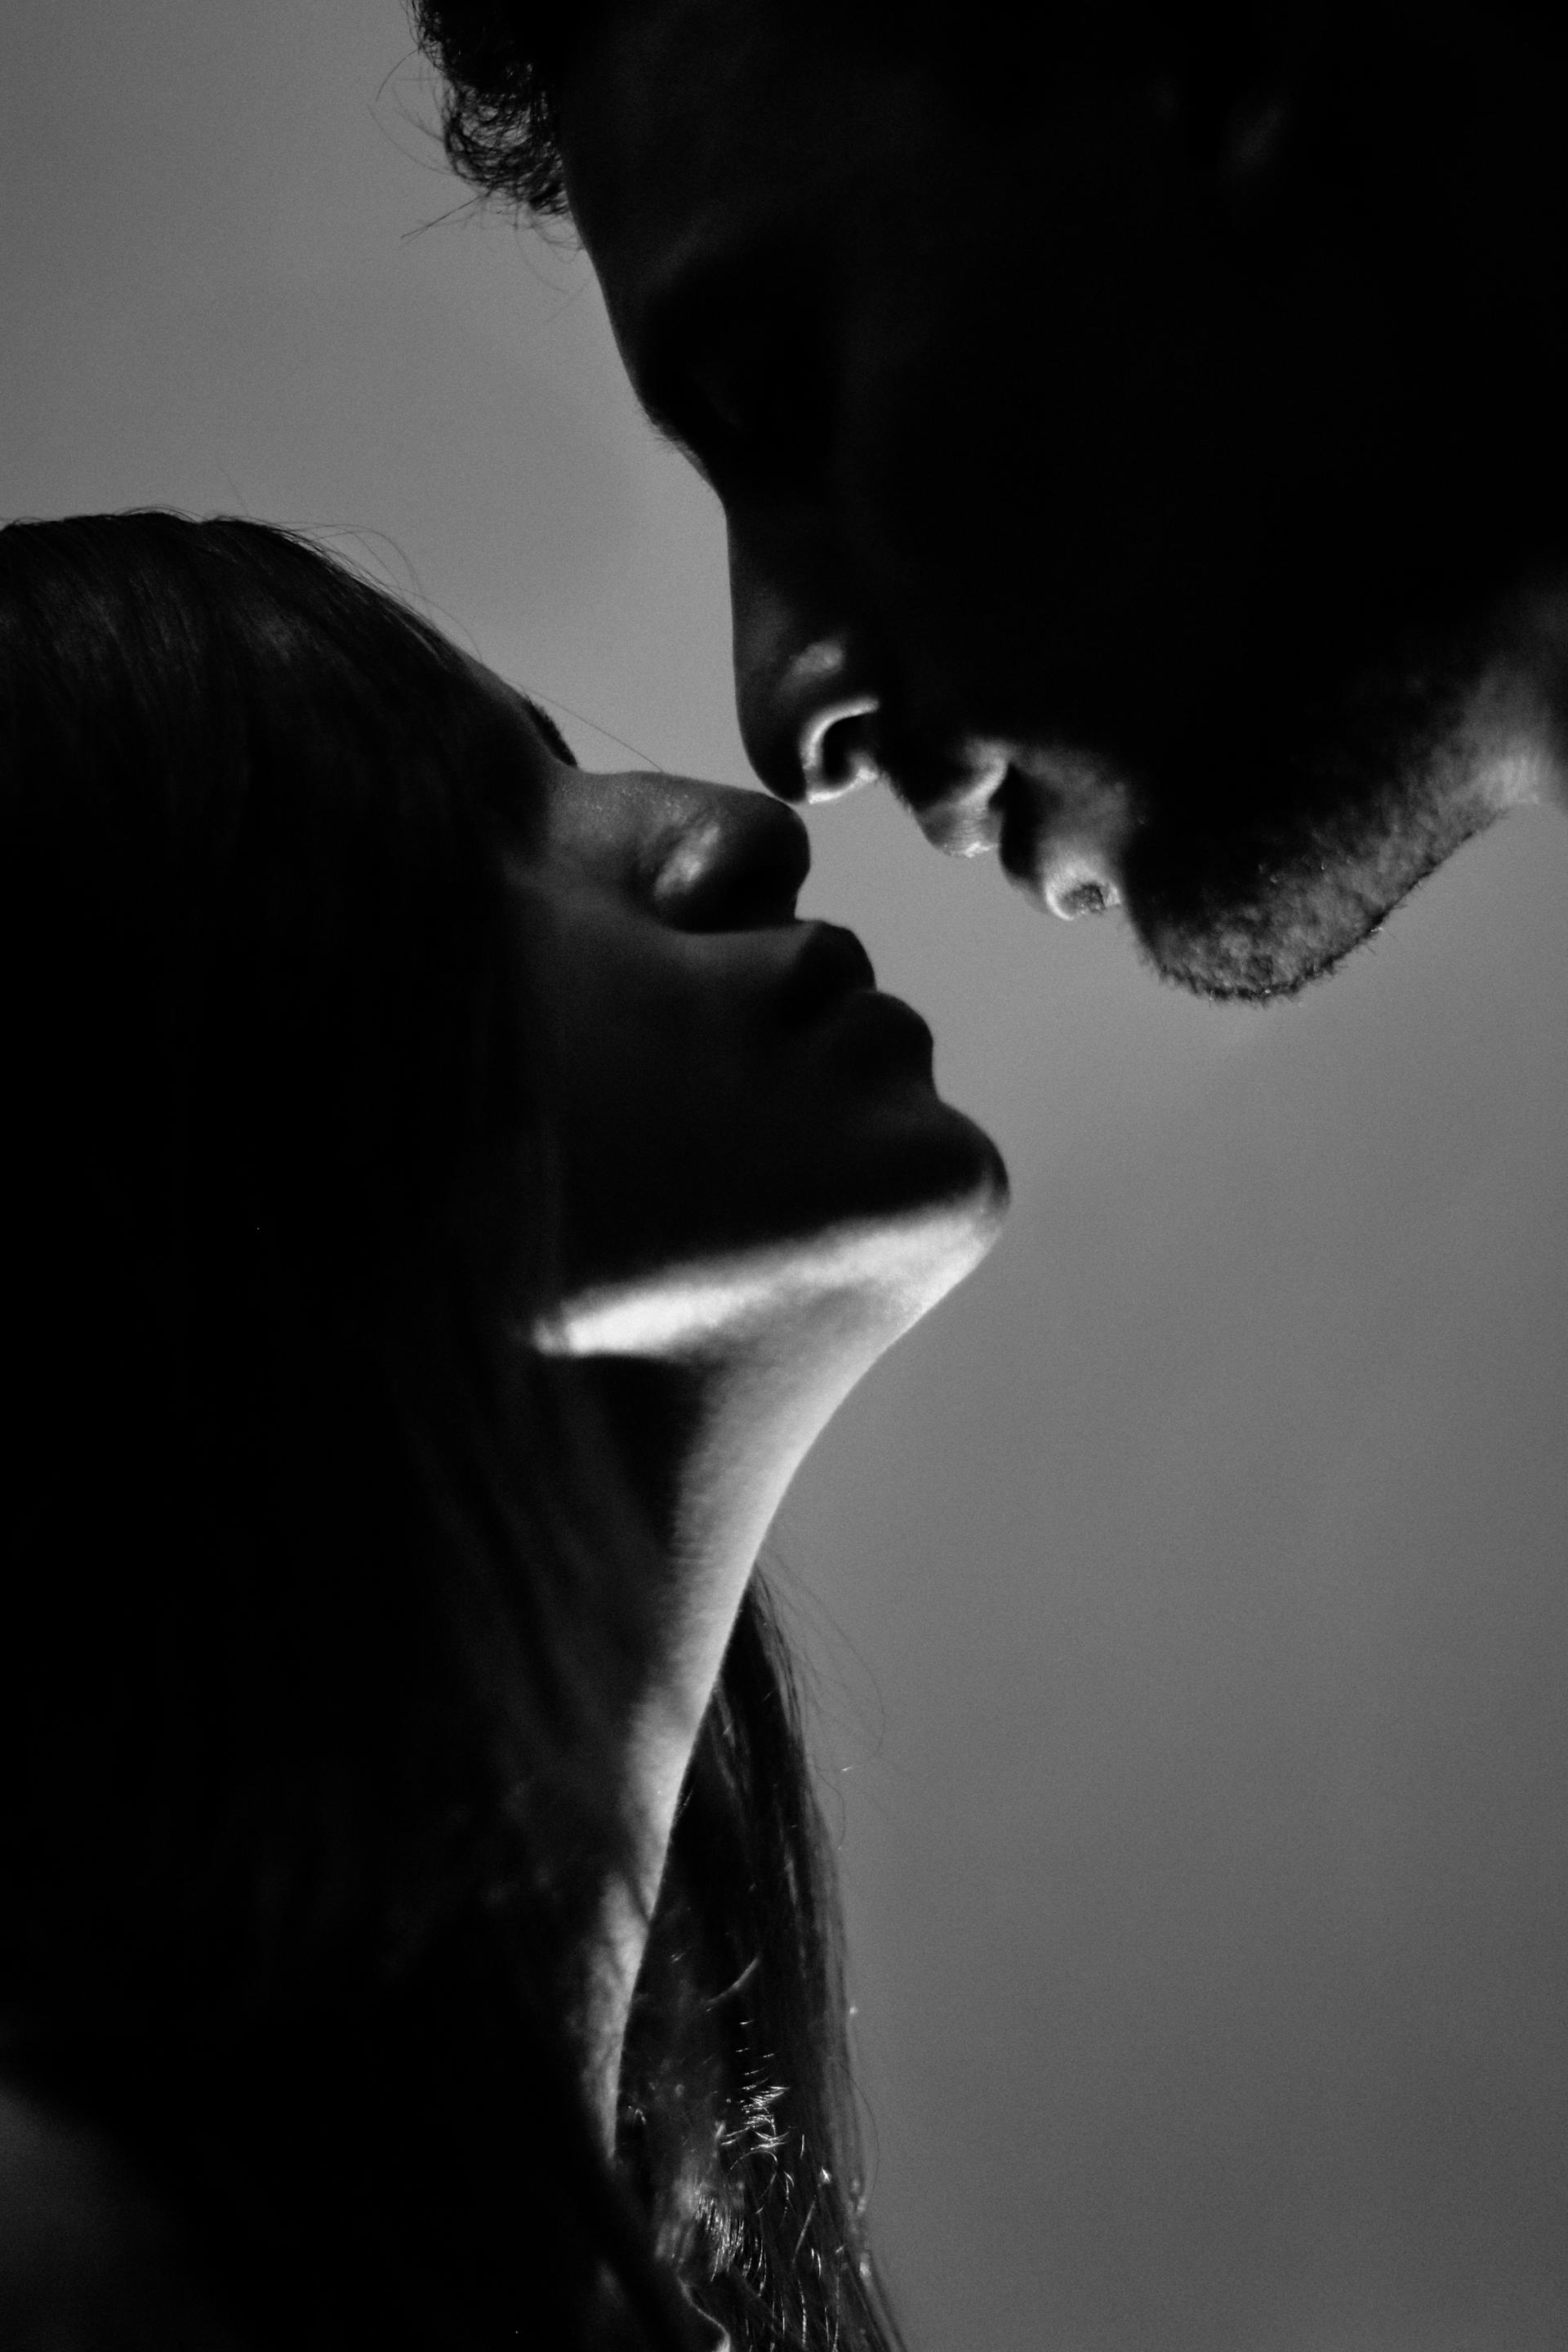 Una pareja a punto de besarse | Fuente: Pexels